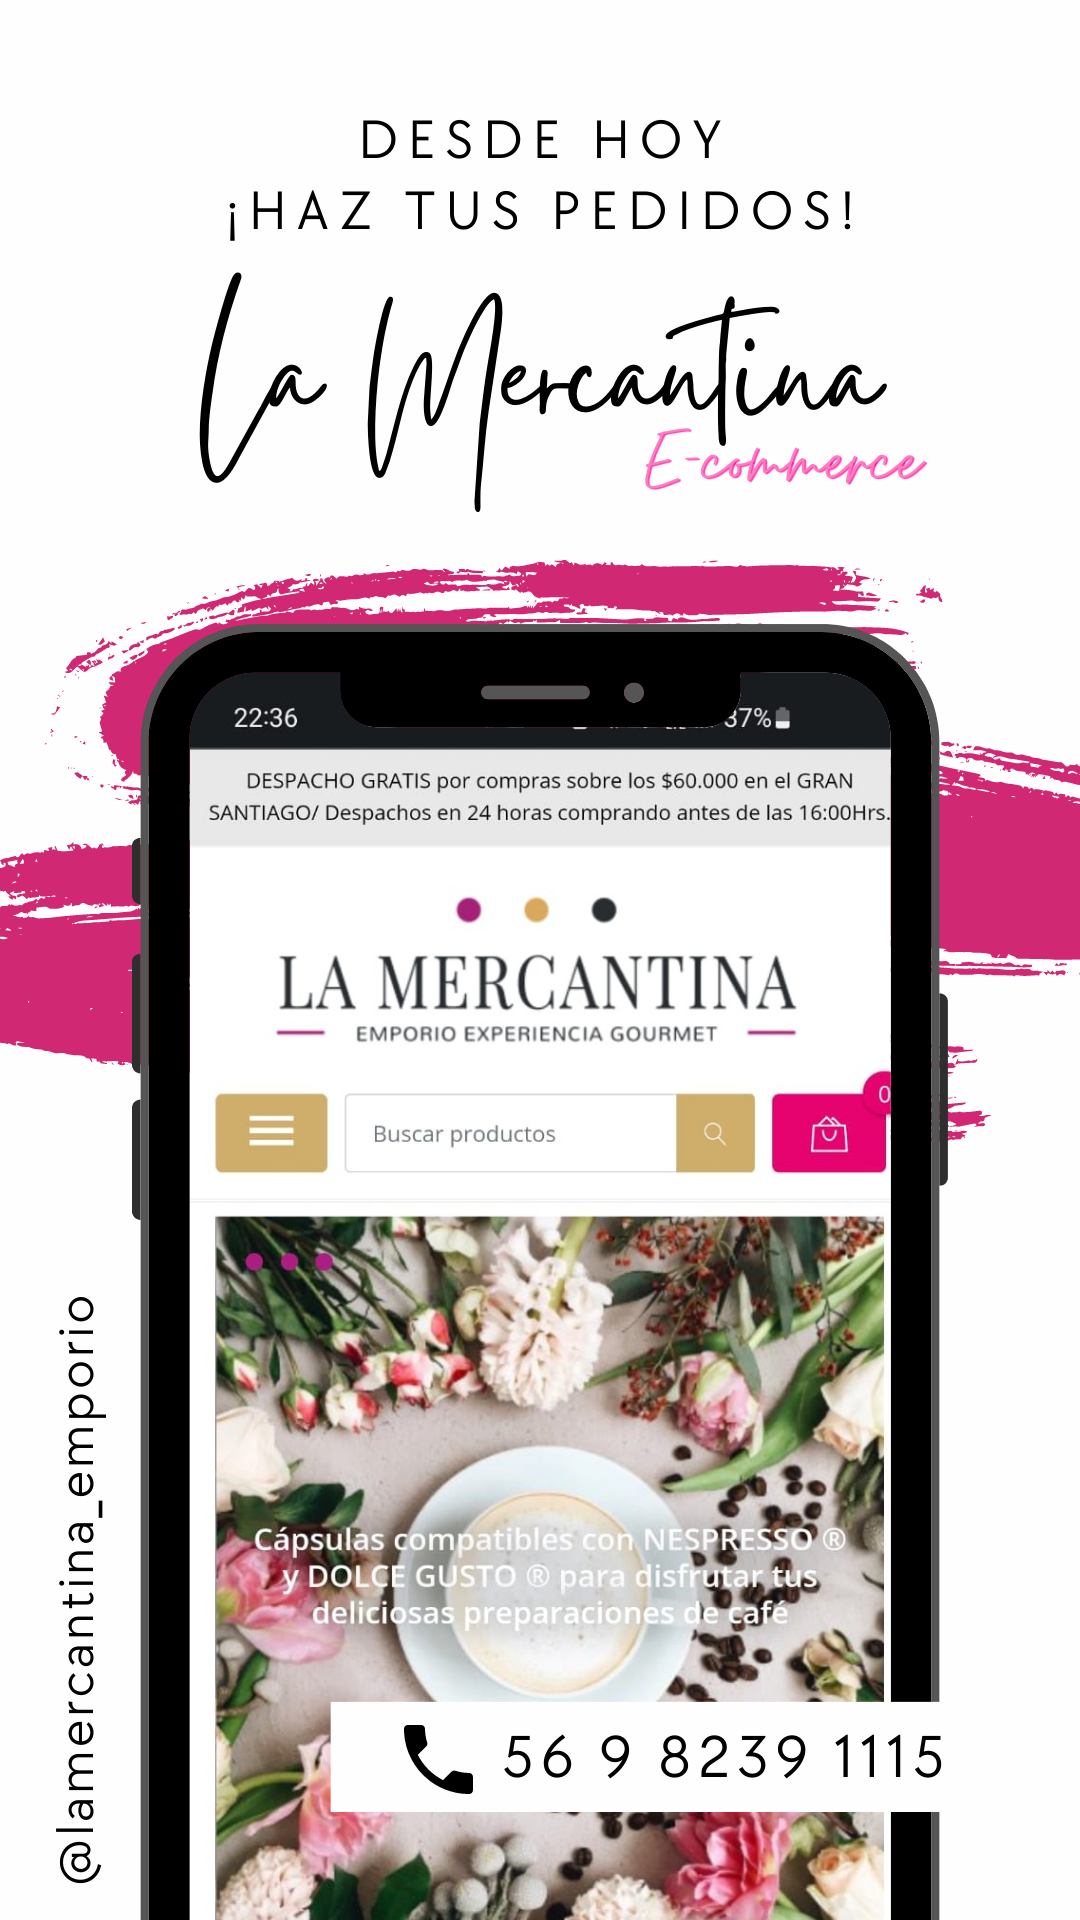 ¡Descubre la nueva experiencia gourmet en línea de La Mercantina!